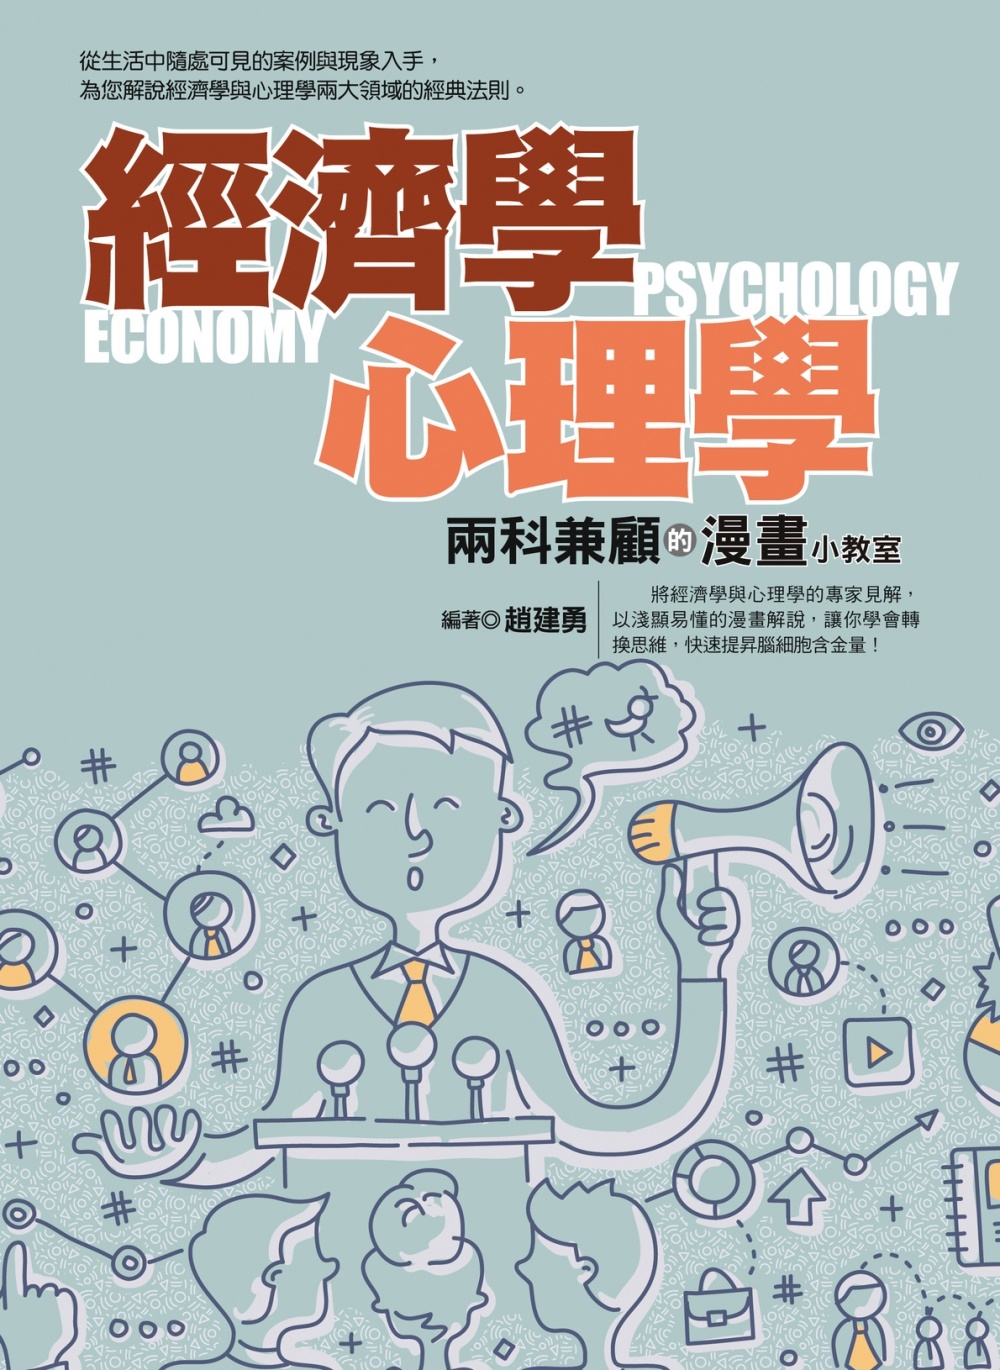 經濟學心理學兩科兼顧的漫畫小教室